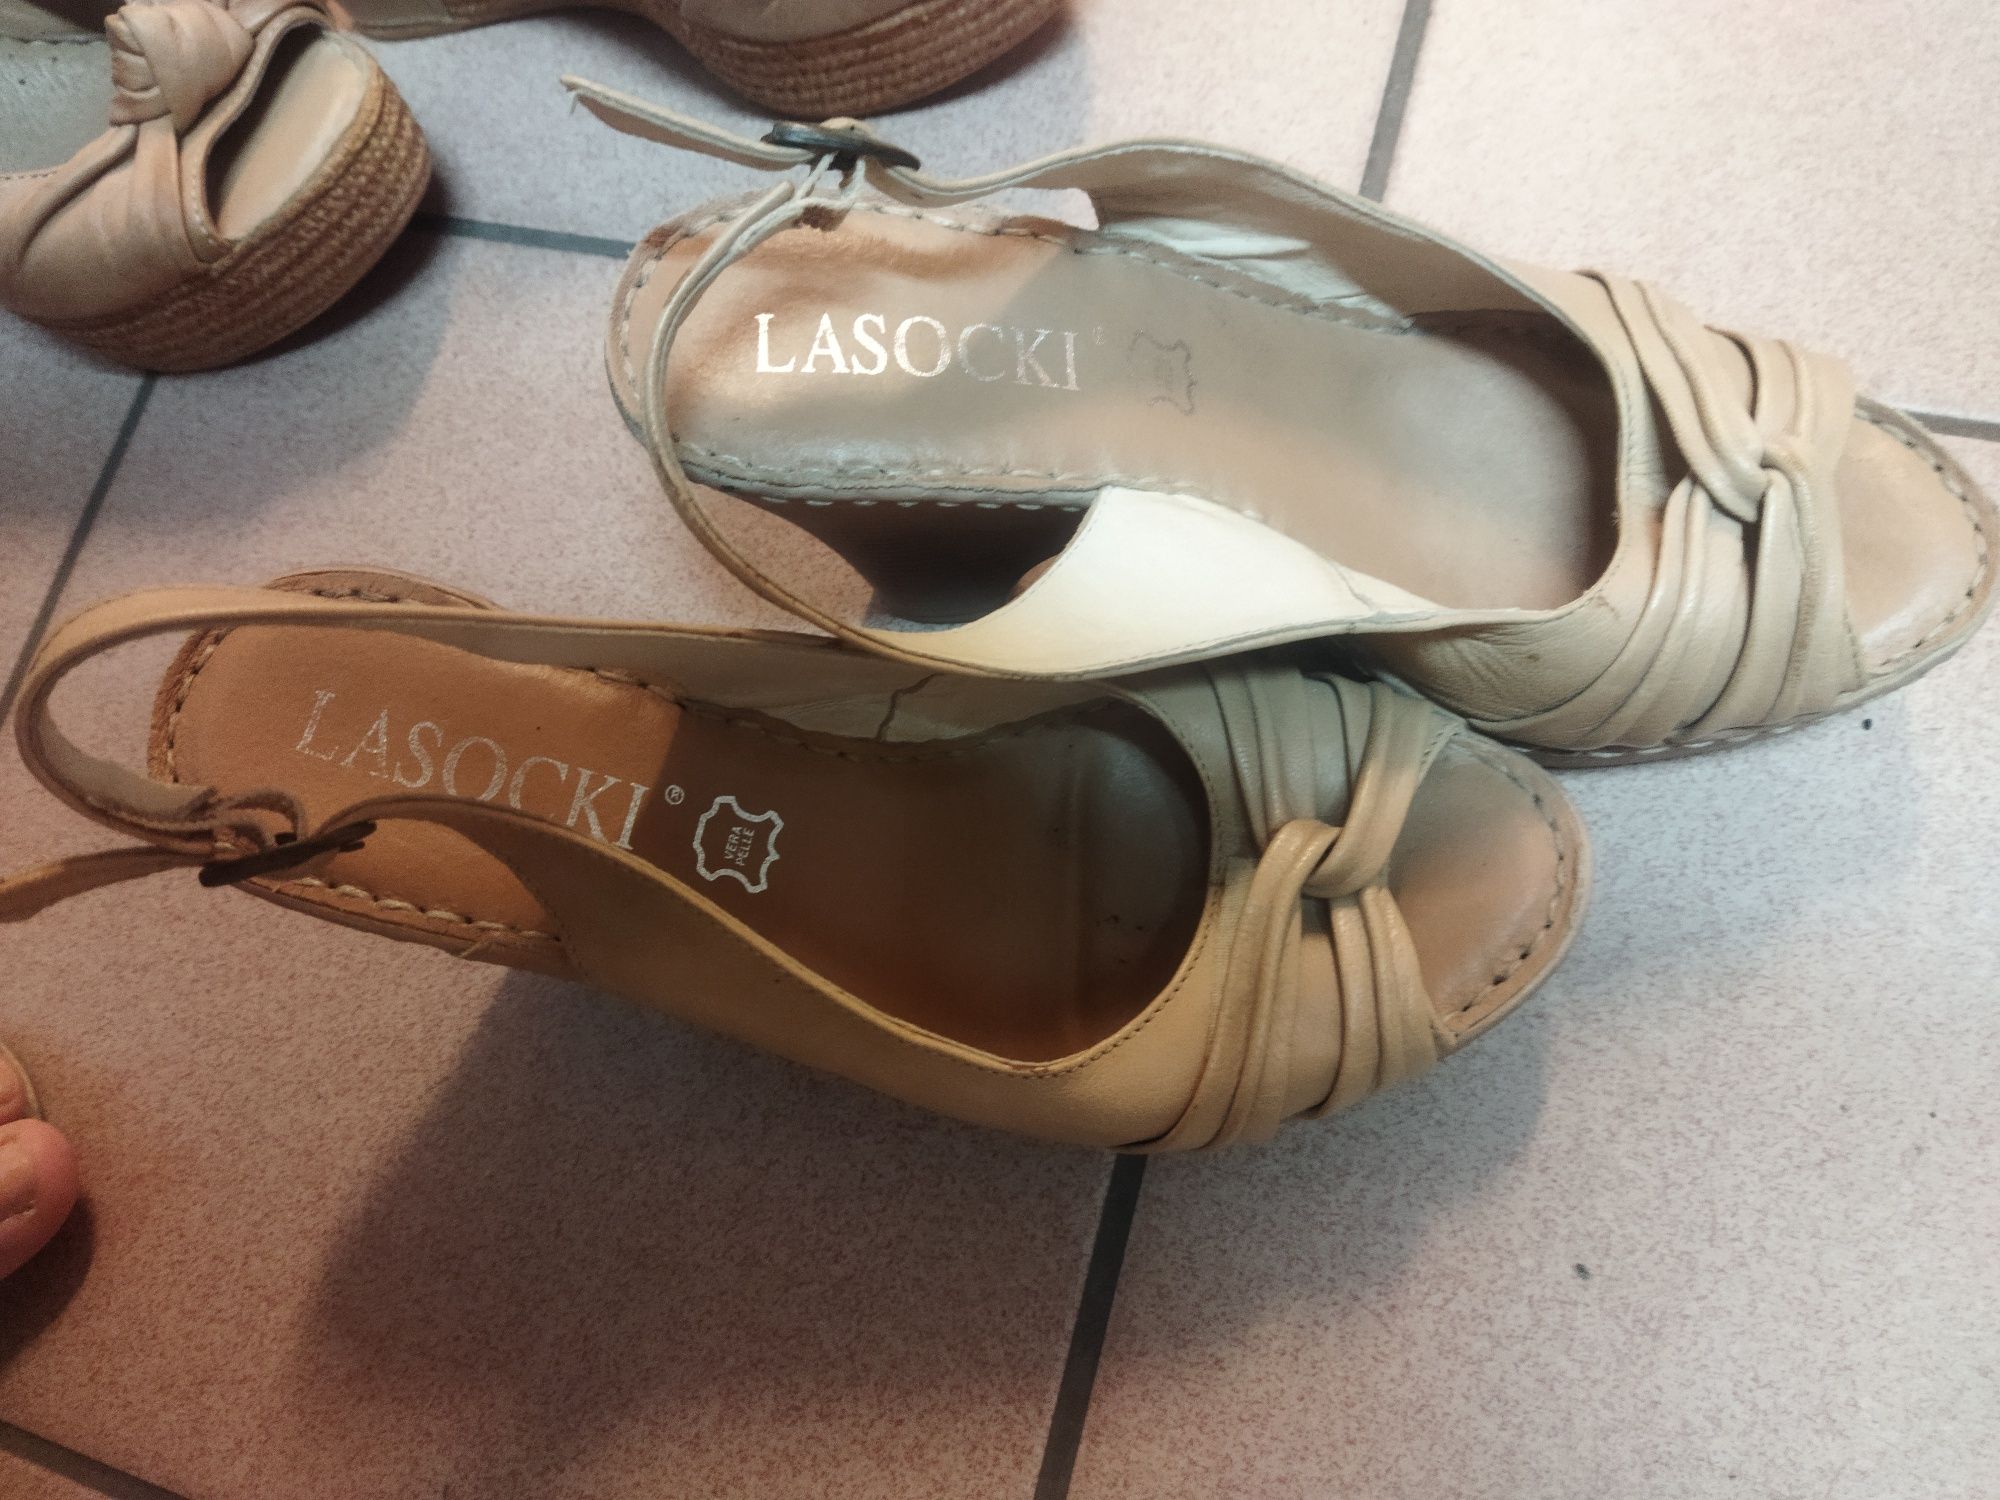 Dwie pary butów marki Lasocki